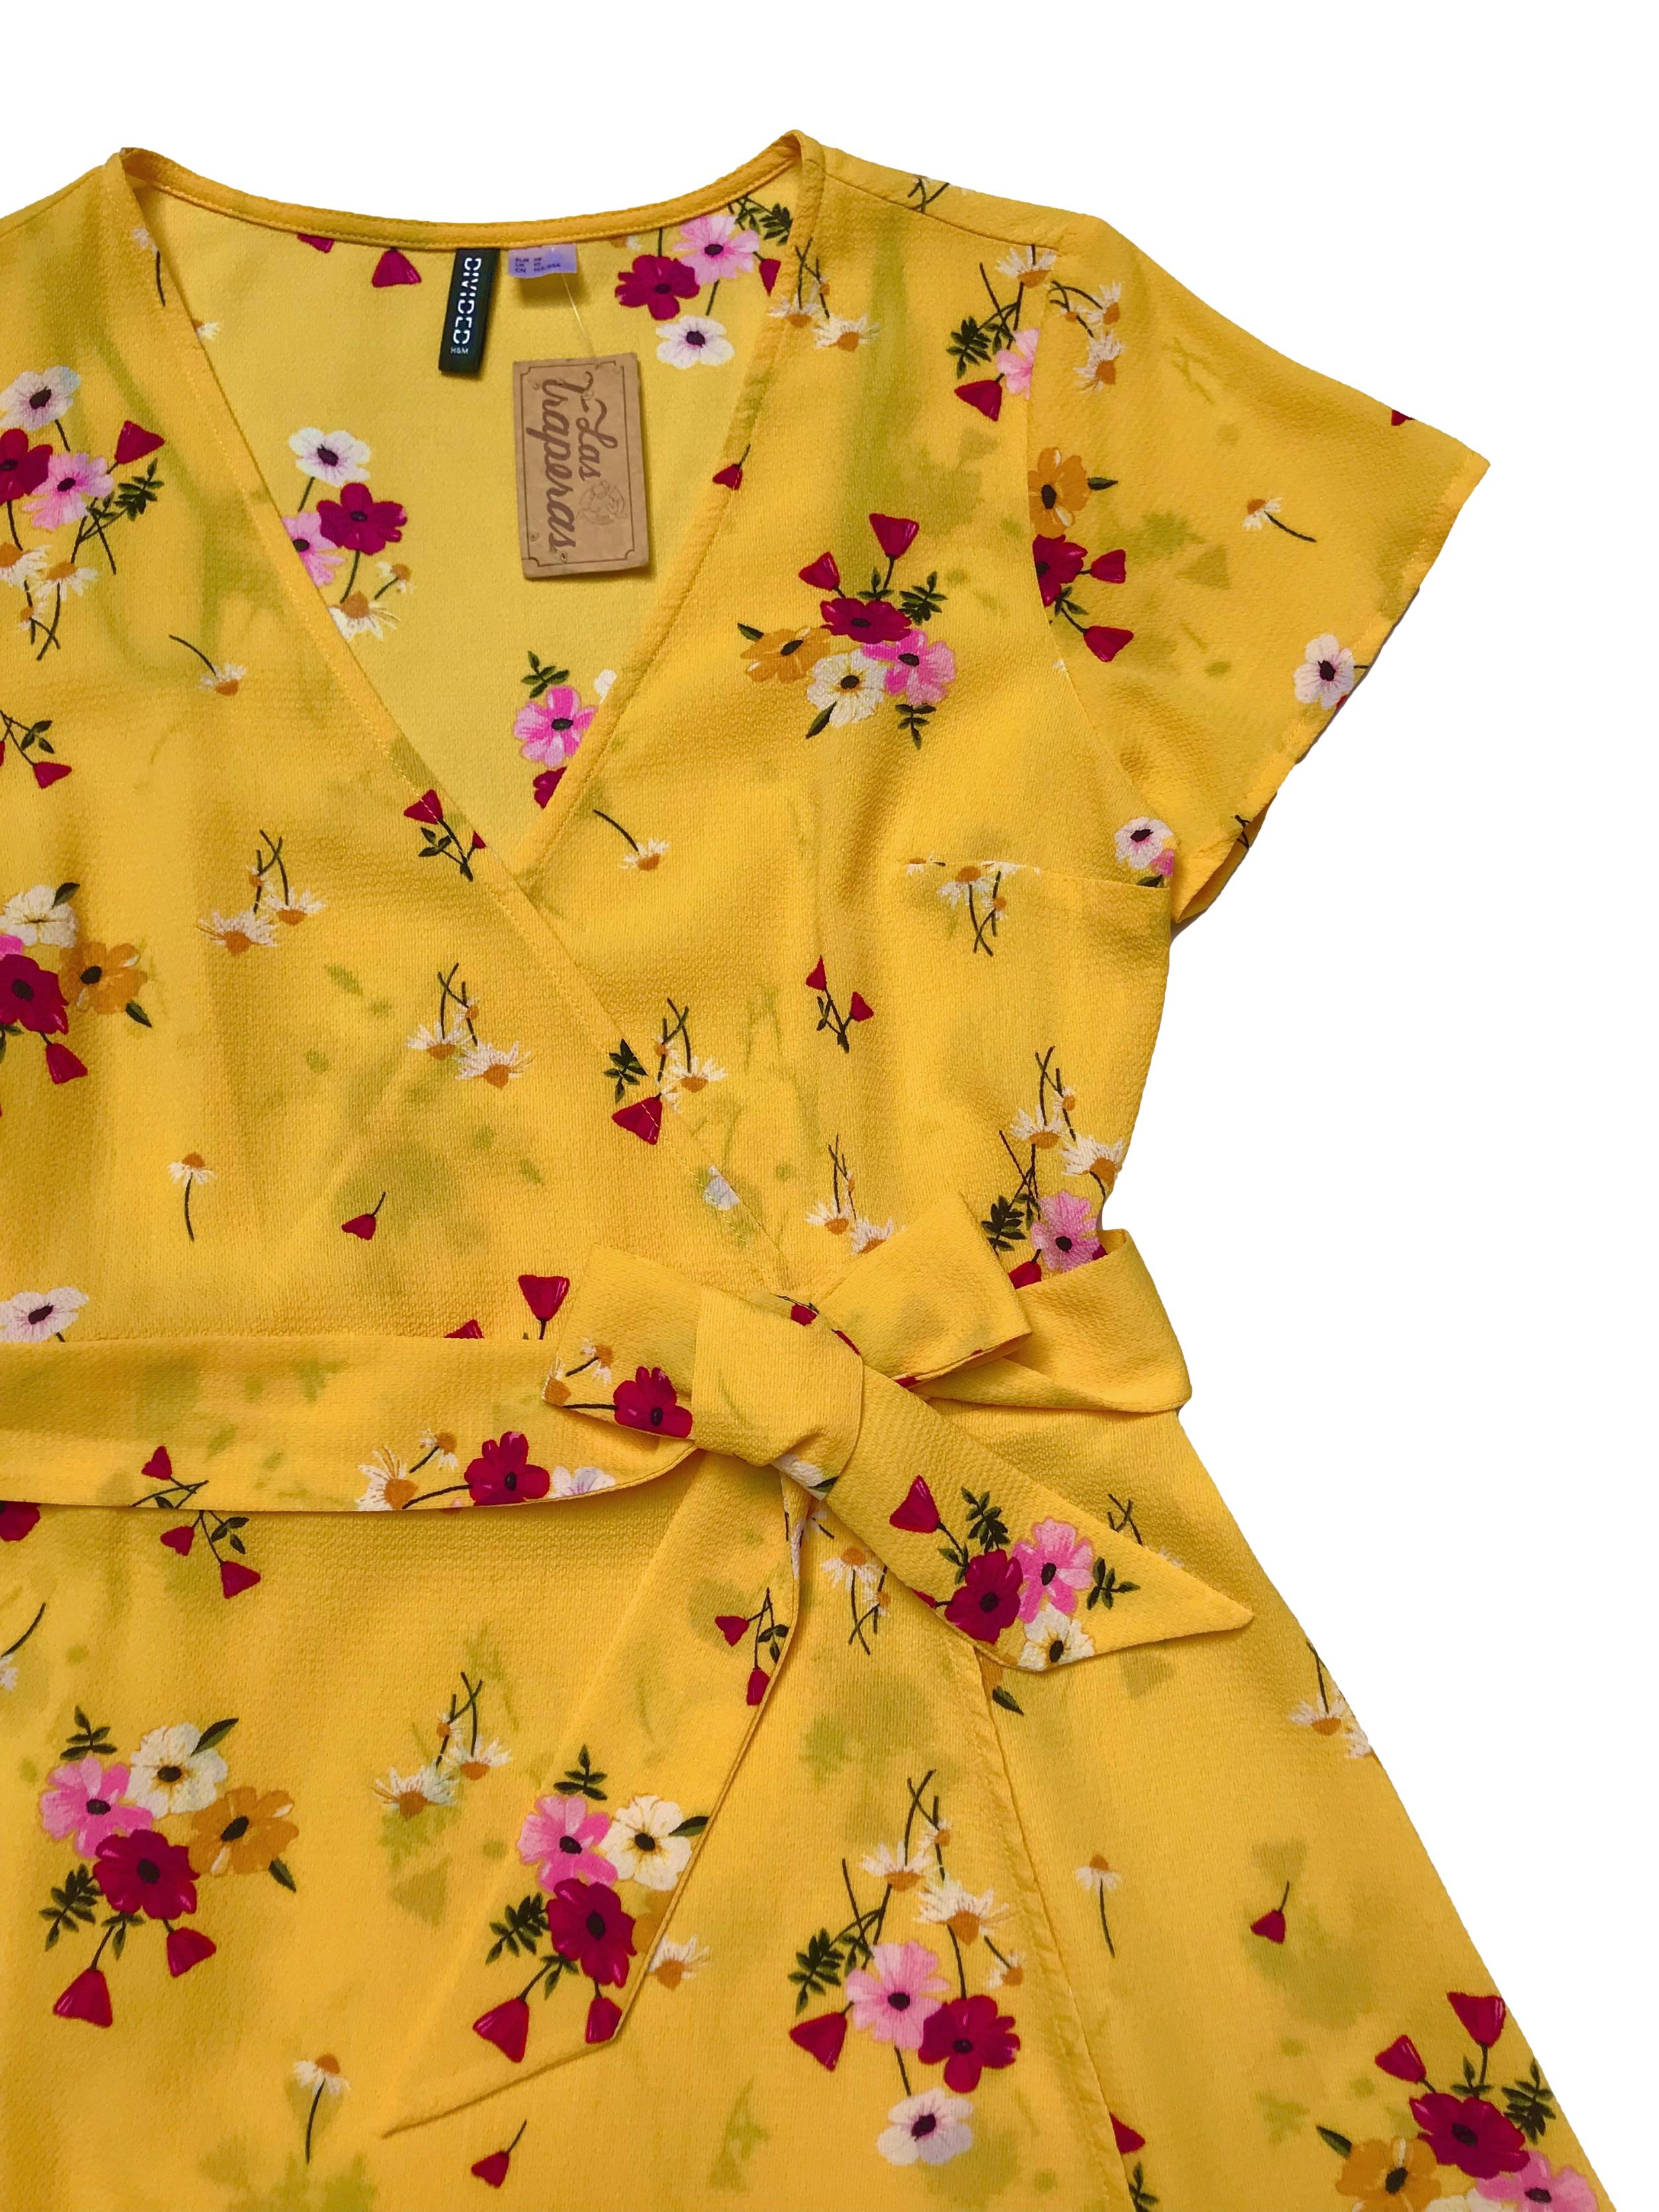 Vestido H&M de crepé amarillo con estampado de flores, modelo cruzado con cinto para amarrar y falda en A. Busto 92cm Largo 85cm